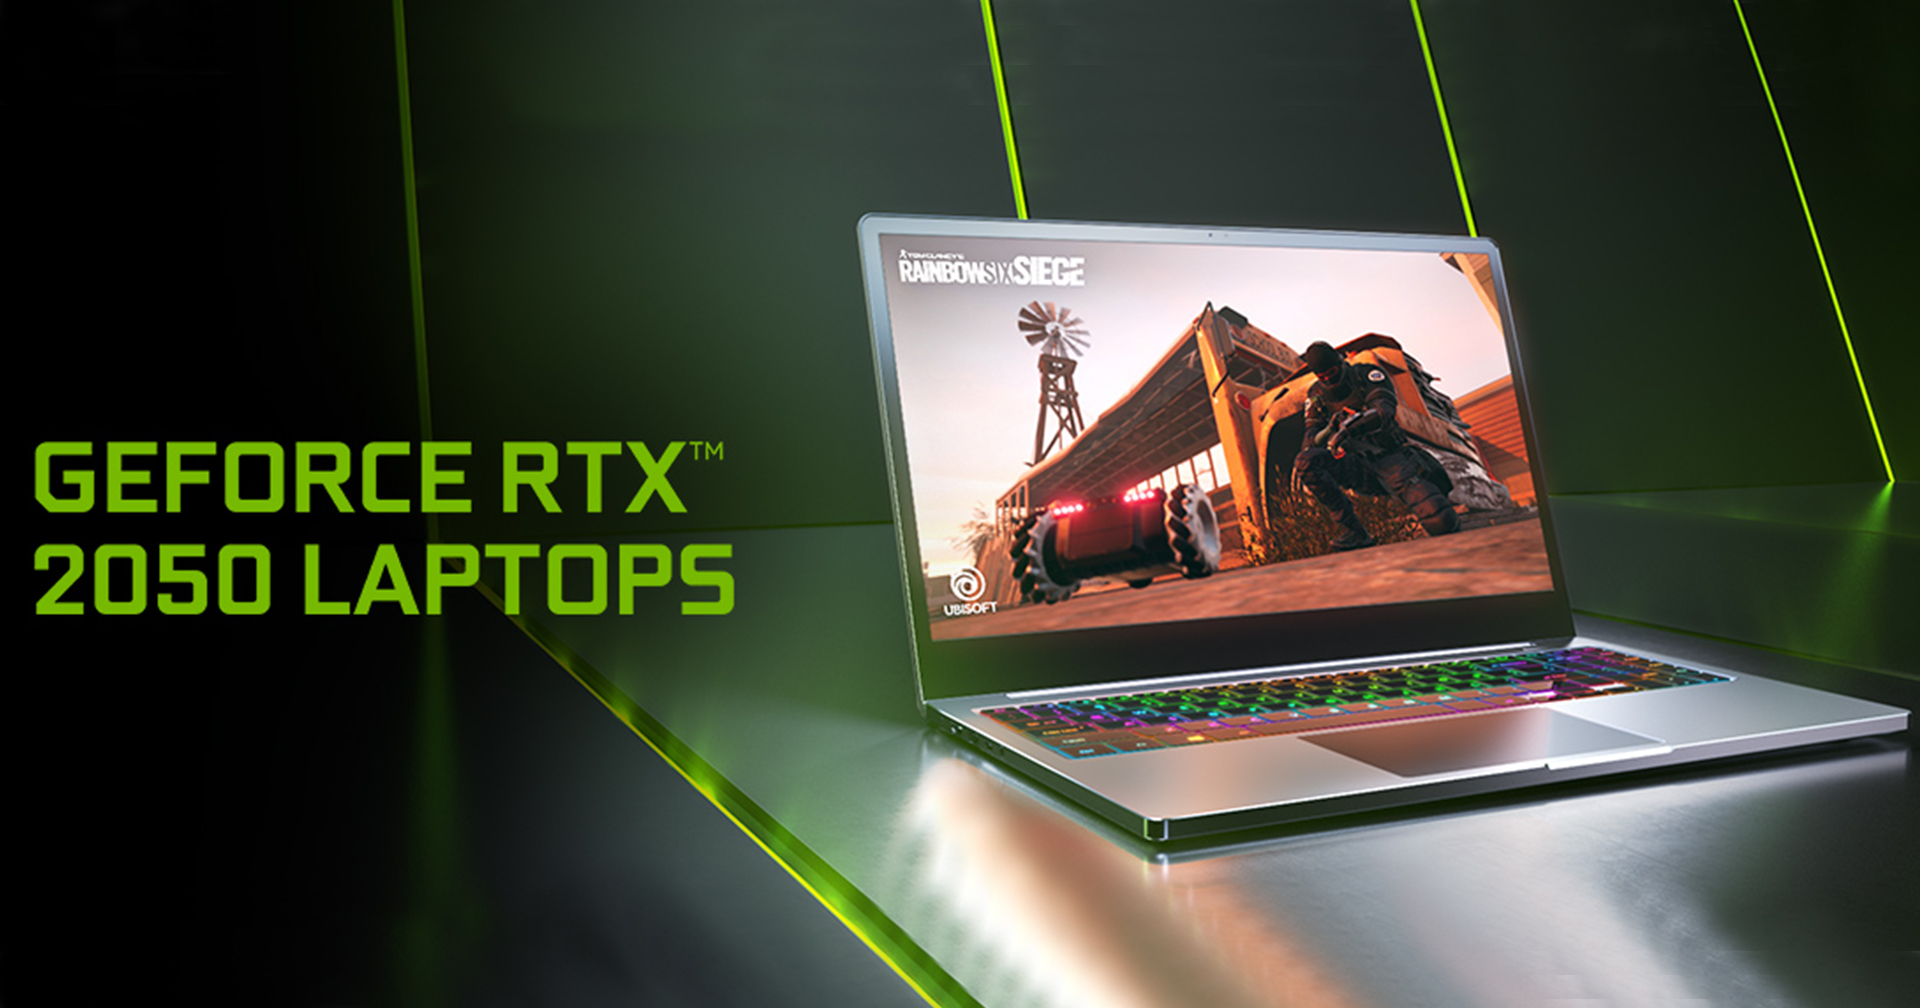 Nvidia เปิดตัว RTX 2050 การ์ดจอสำหรับ Laptop รุ่นเริ่มต้นตัวใหม่